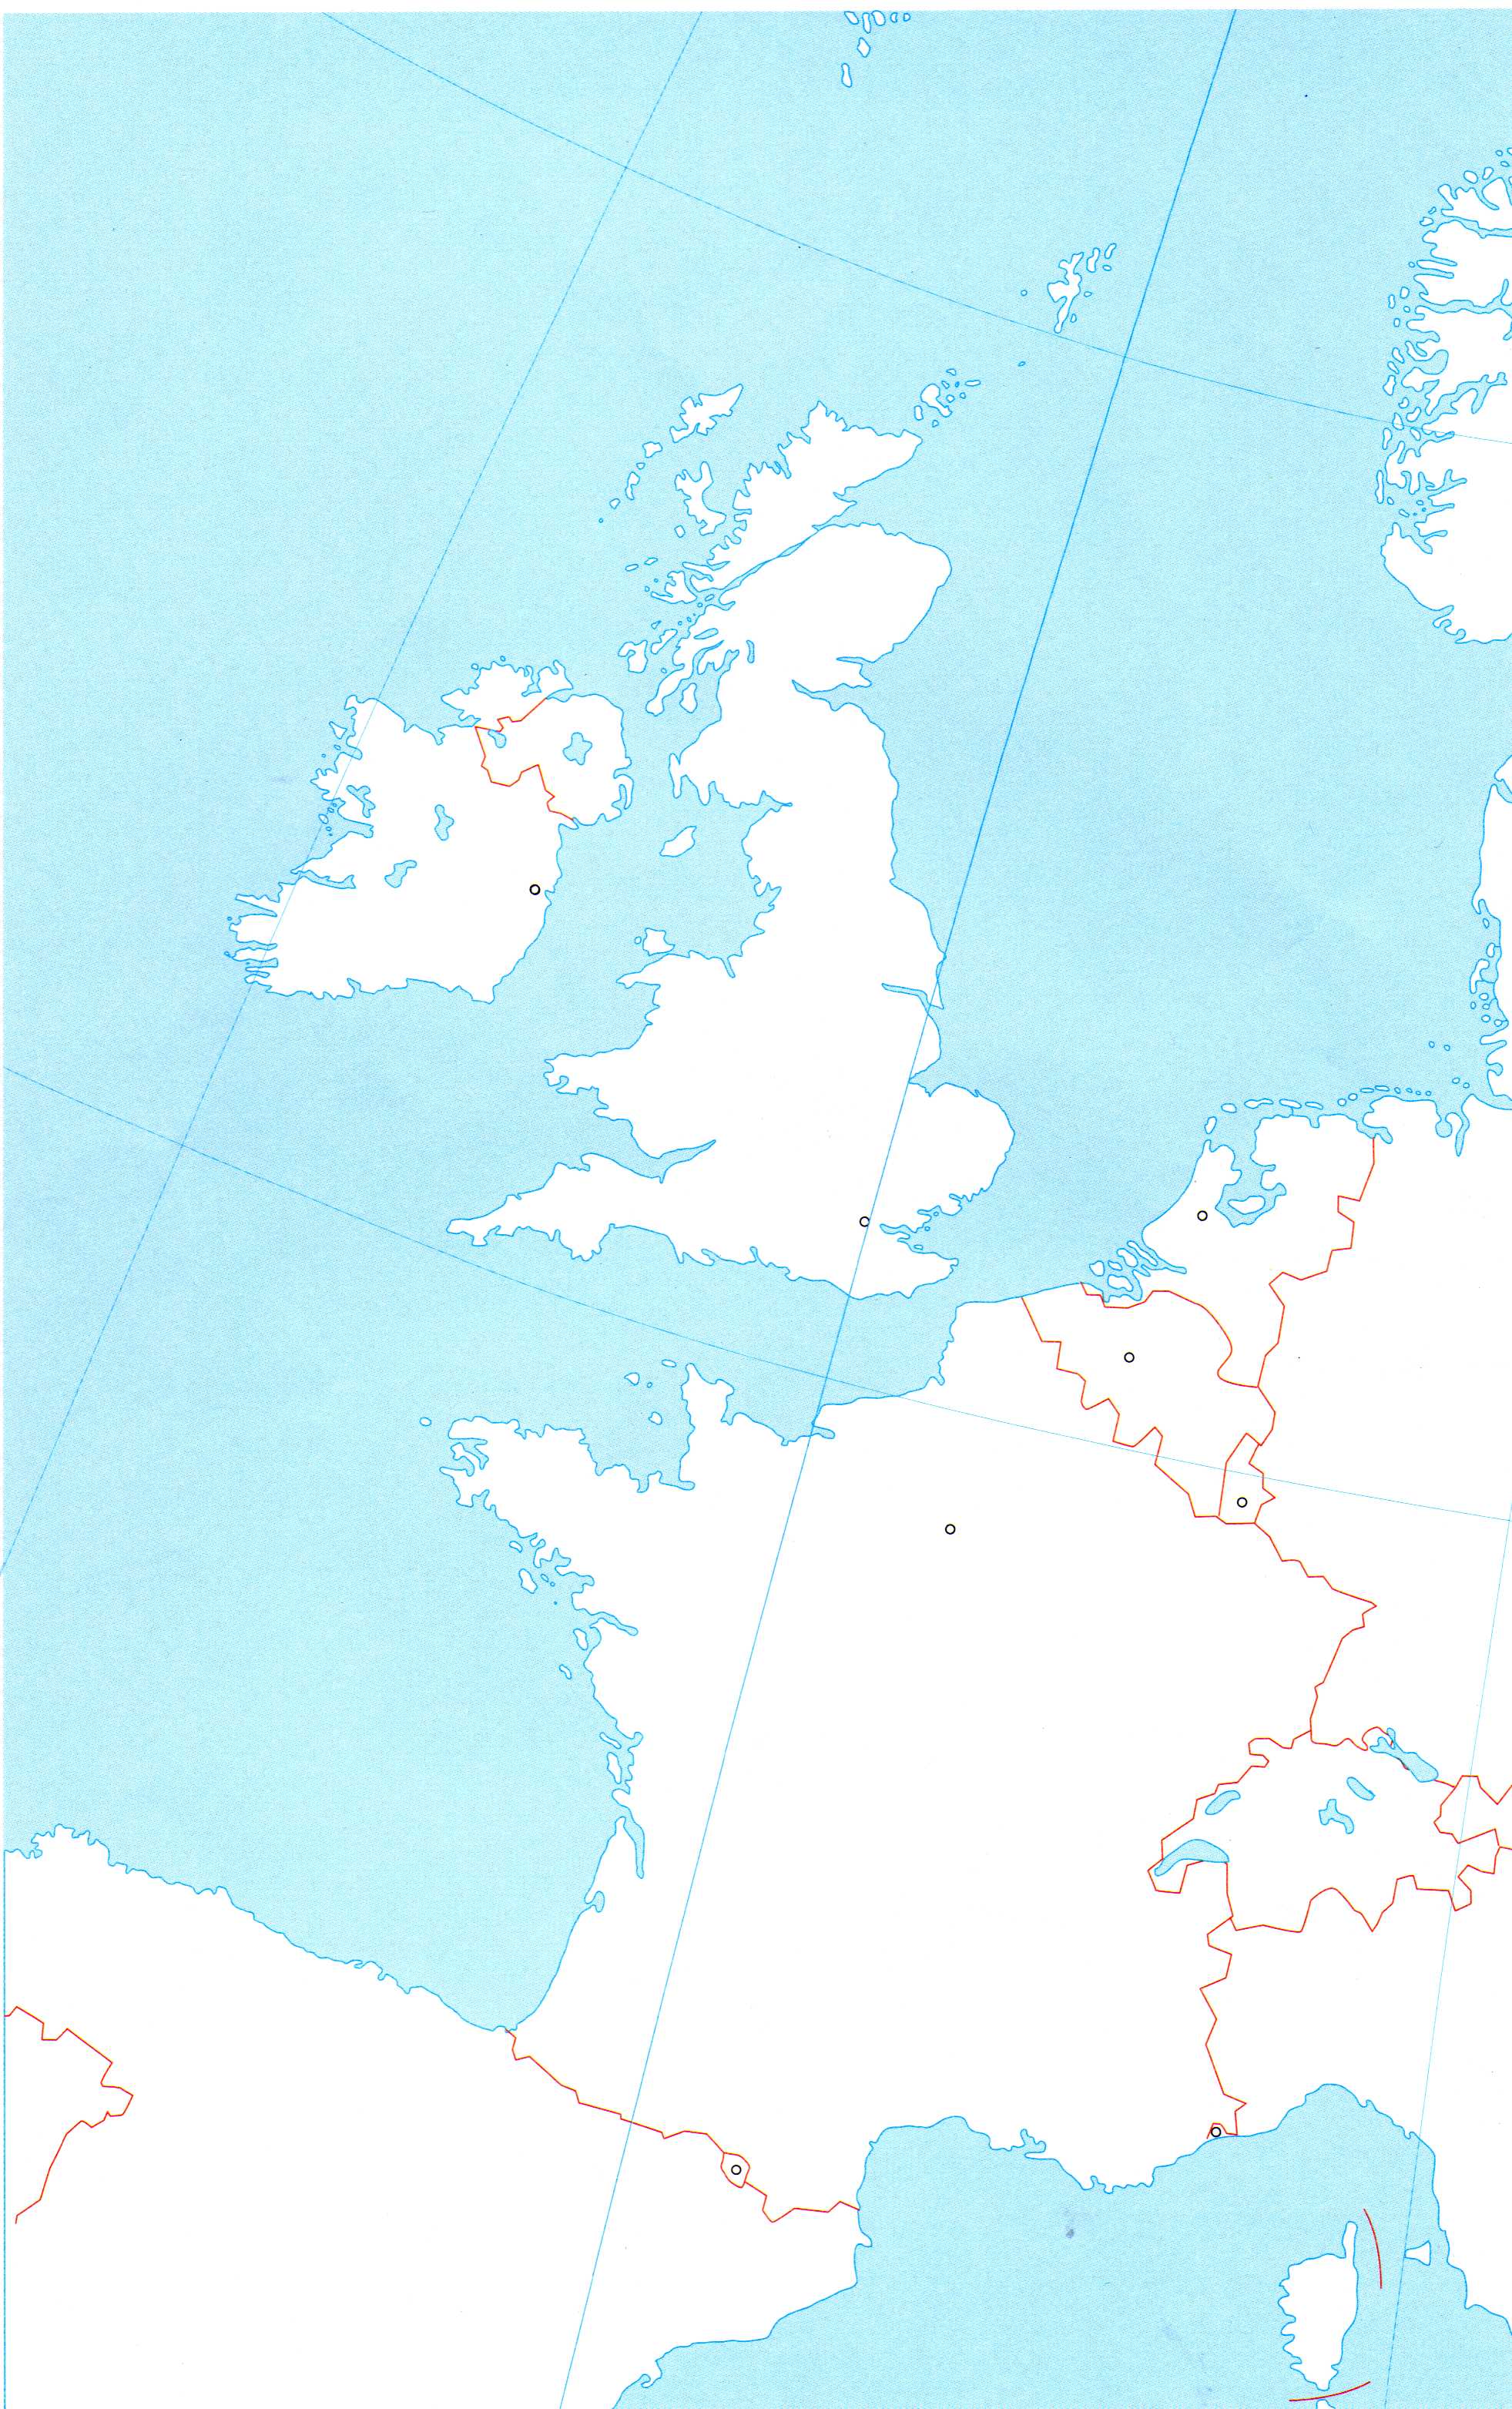 sjeverna europa slijepa karta Osnovna škola 